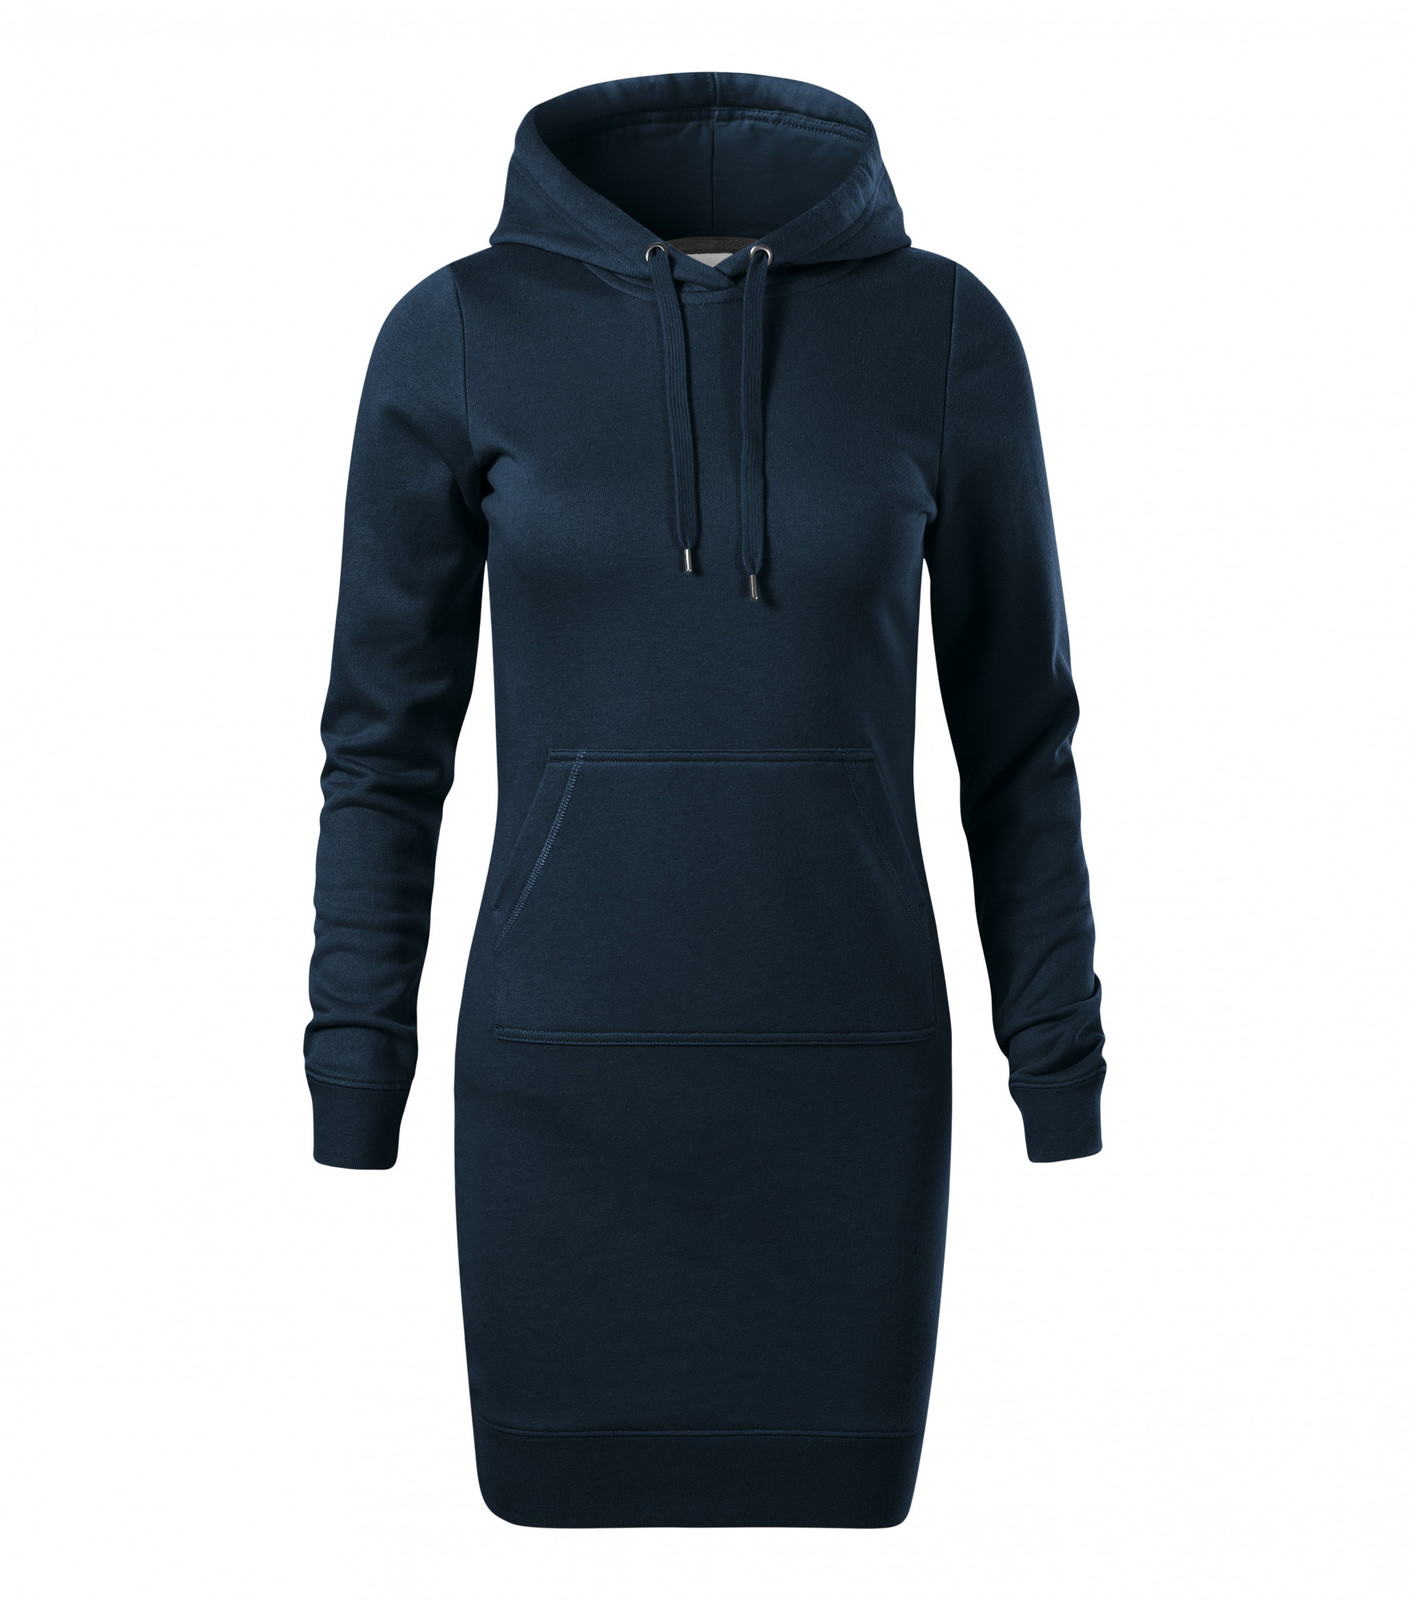 Dámske šaty Malfini Snap 419 - veľkosť: XL, farba: tmavo modrá